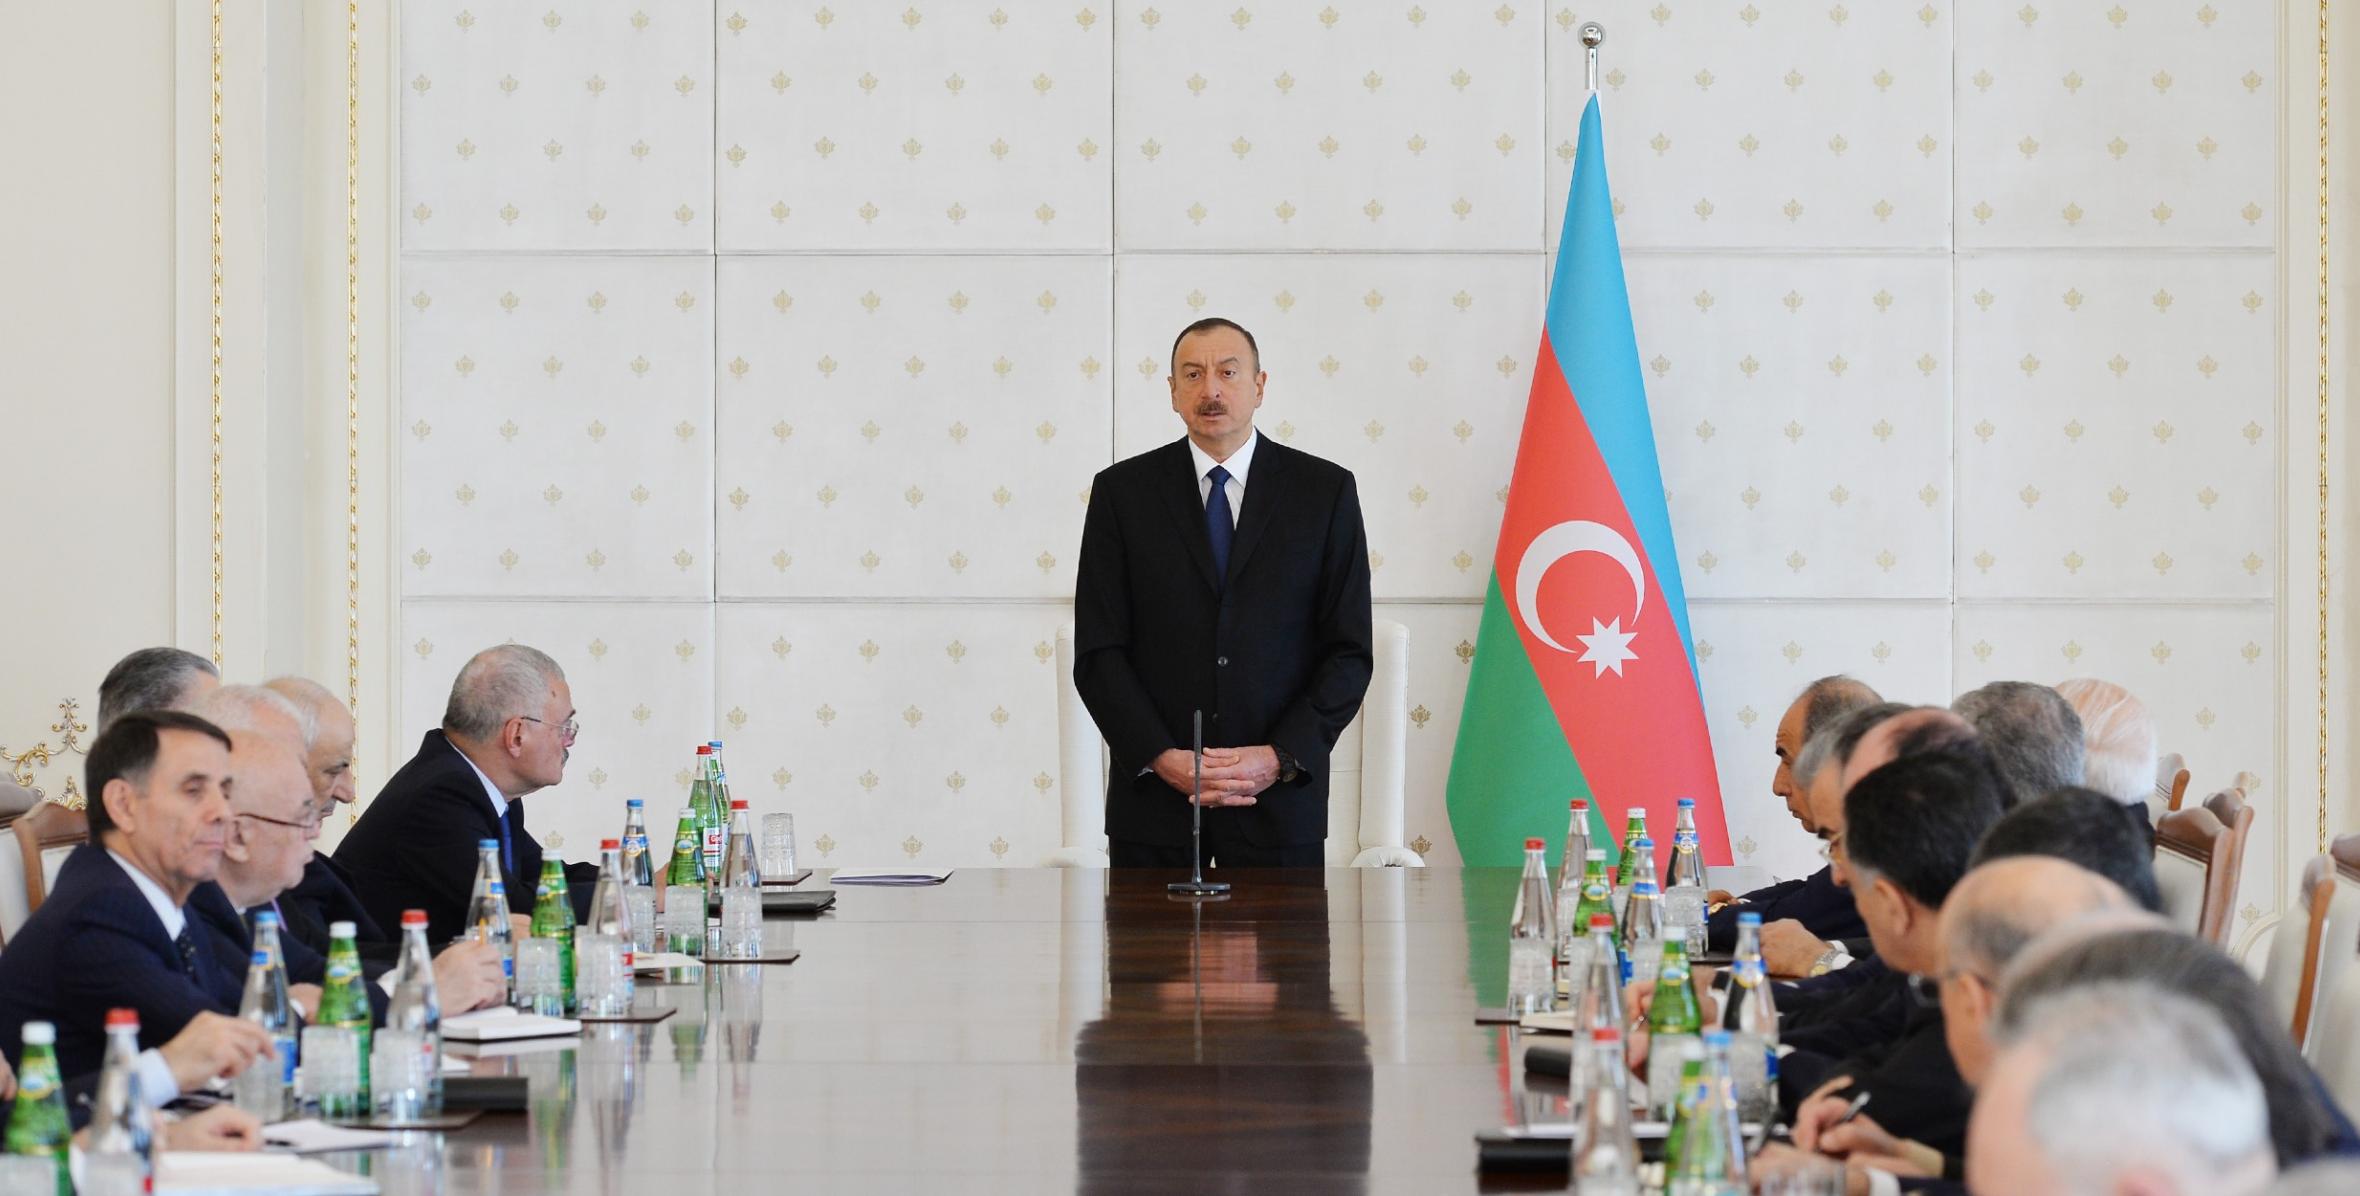 Вступительная речь Ильхама Алиева на заседании Кабинета министров, посвященное итогам первого квартала года и предстоящим задачам